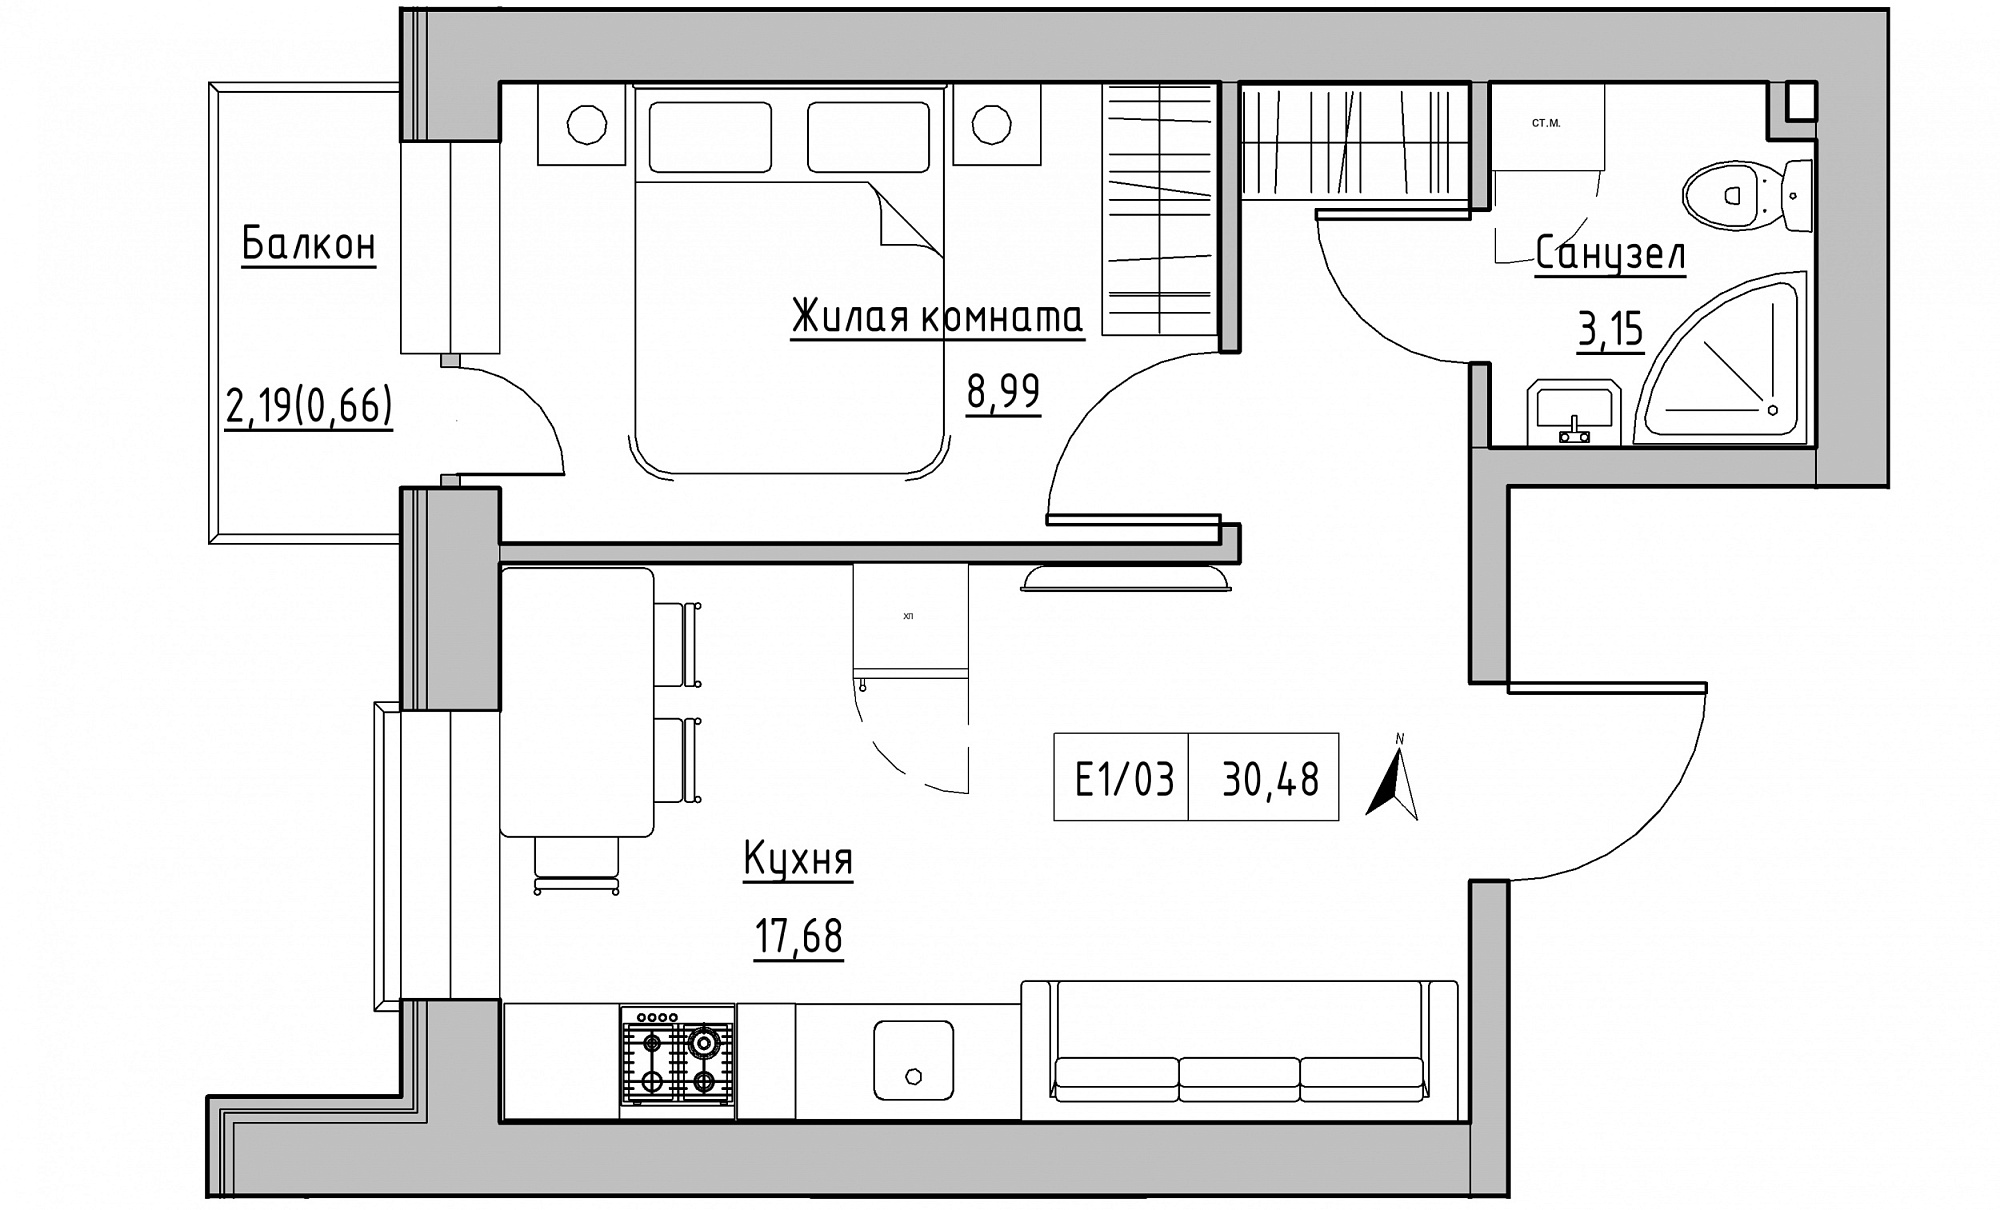 Планування 1-к квартира площею 30.48м2, KS-015-03/0003.